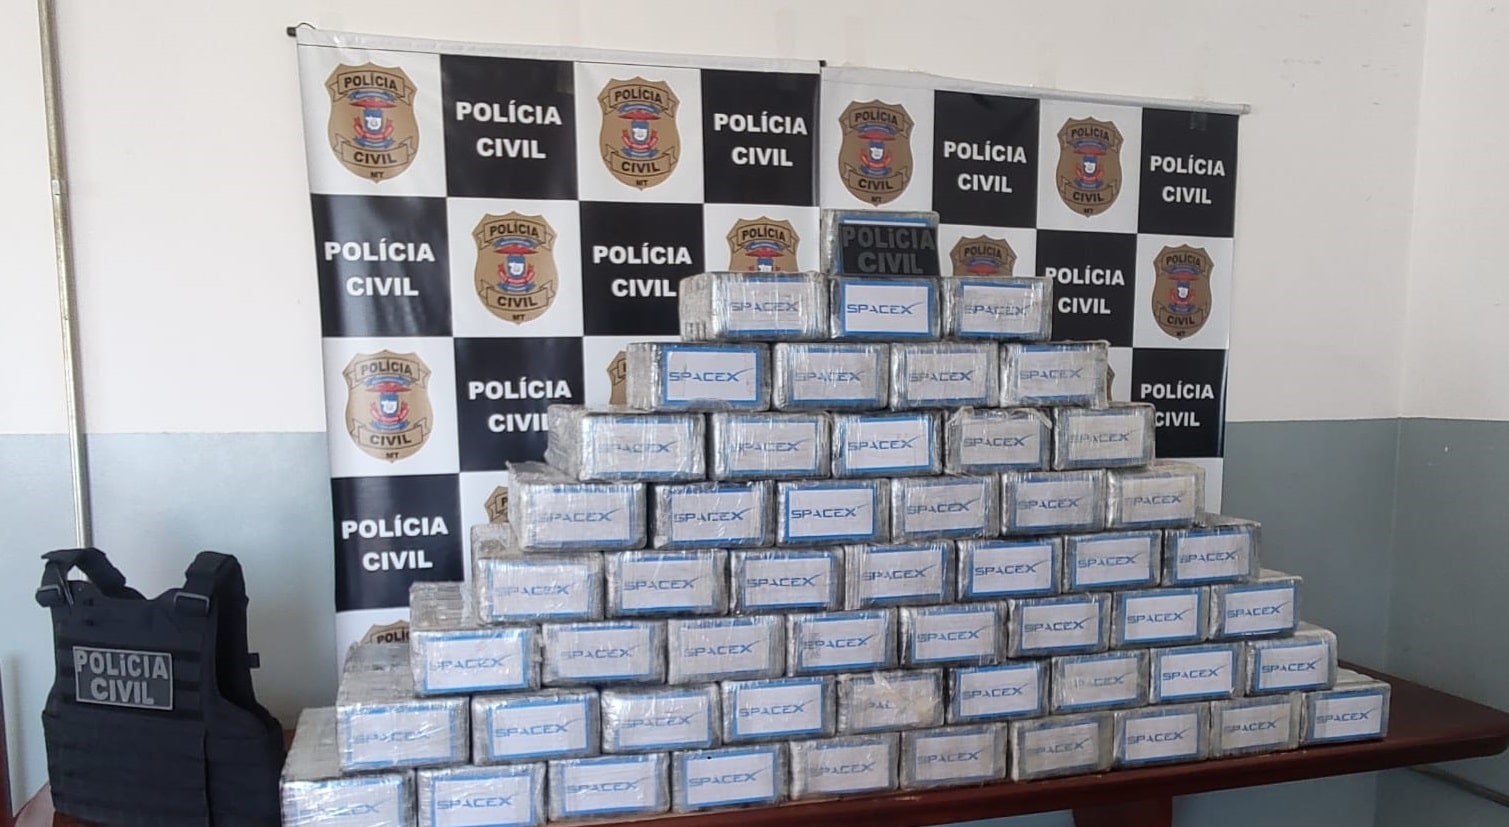 Cocaina avaliada em R 13 milhoes e apreendida em Mato Grosso